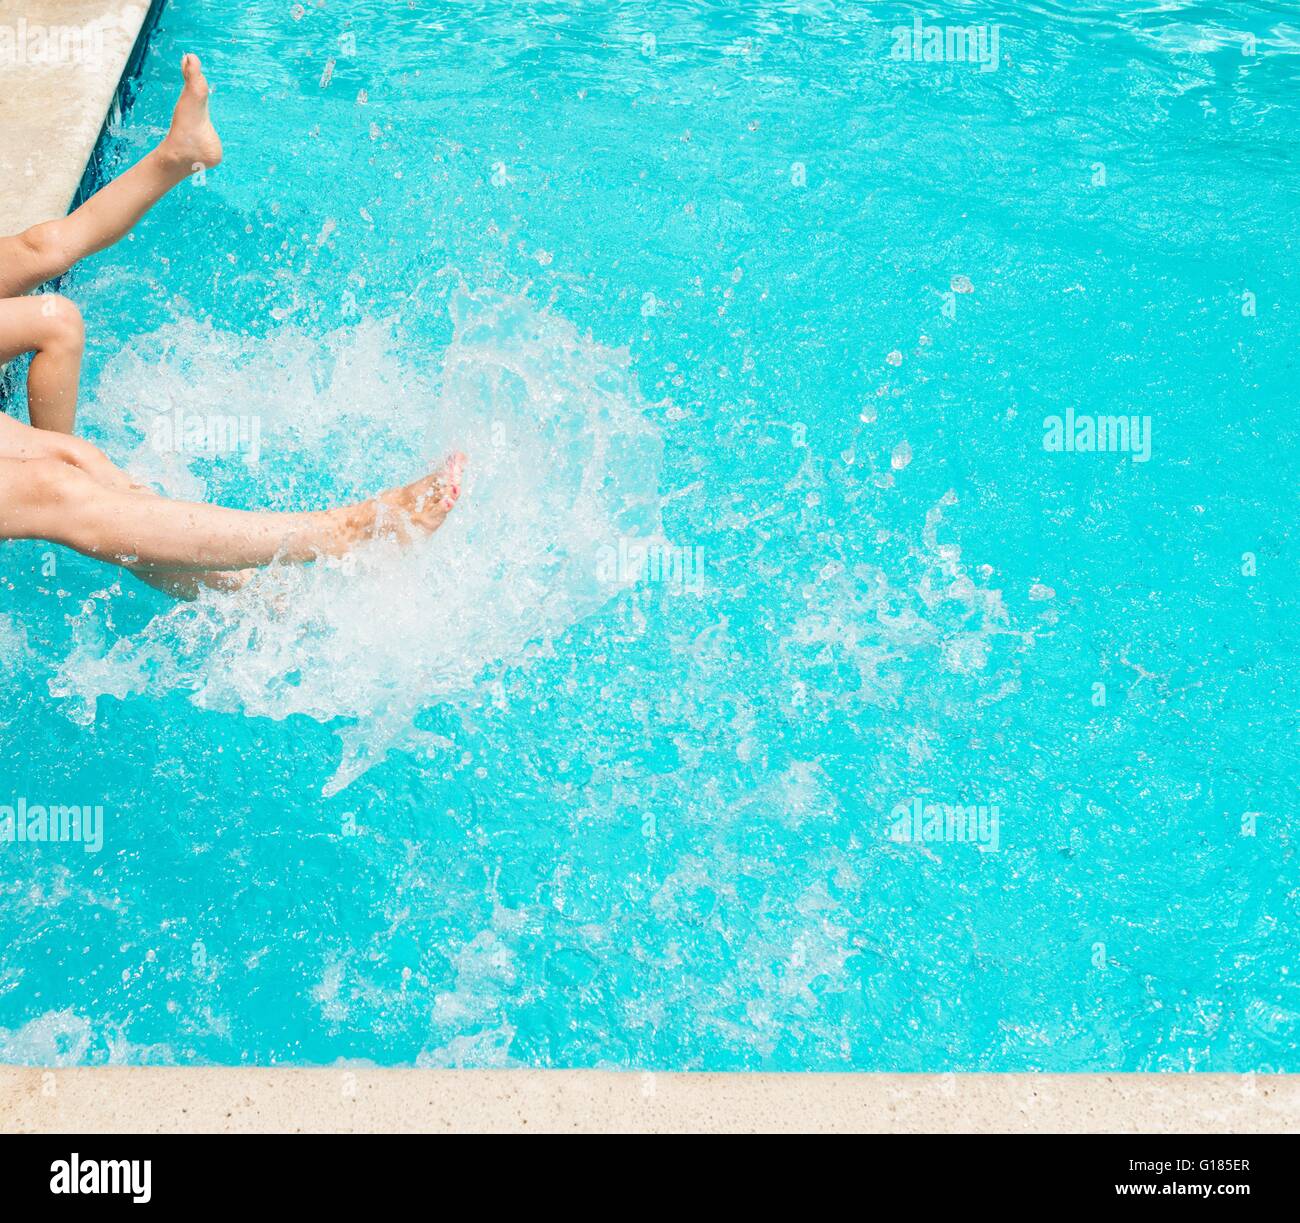 Les jambes les projections d'eau en piscine Banque D'Images